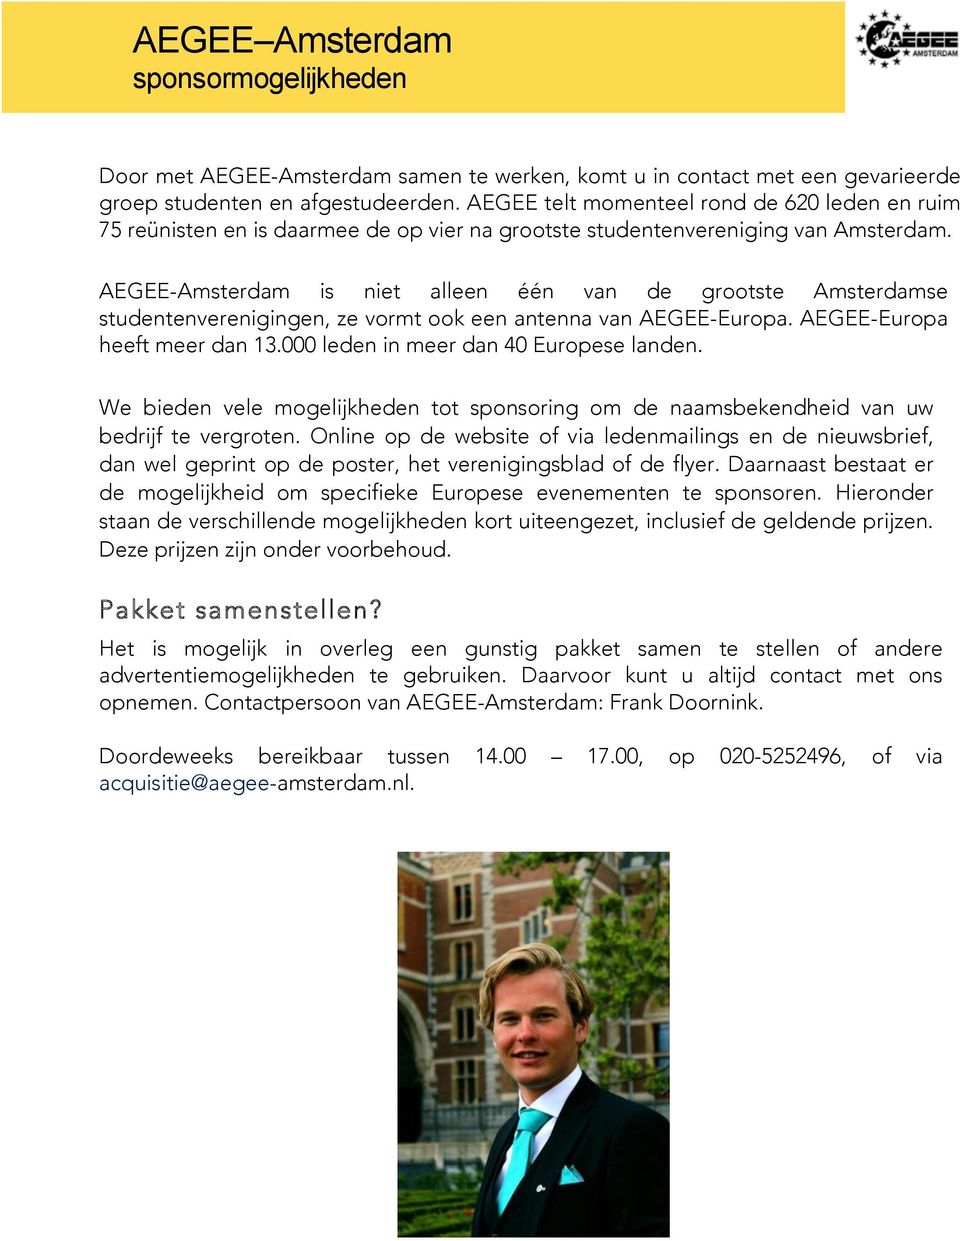 AEGEE-Amsterdam is niet alleen één van de grootste Amsterdamse studentenverenigingen, ze vormt ook een antenna van AEGEE-Europa. AEGEE-Europa heeft meer dan 13.